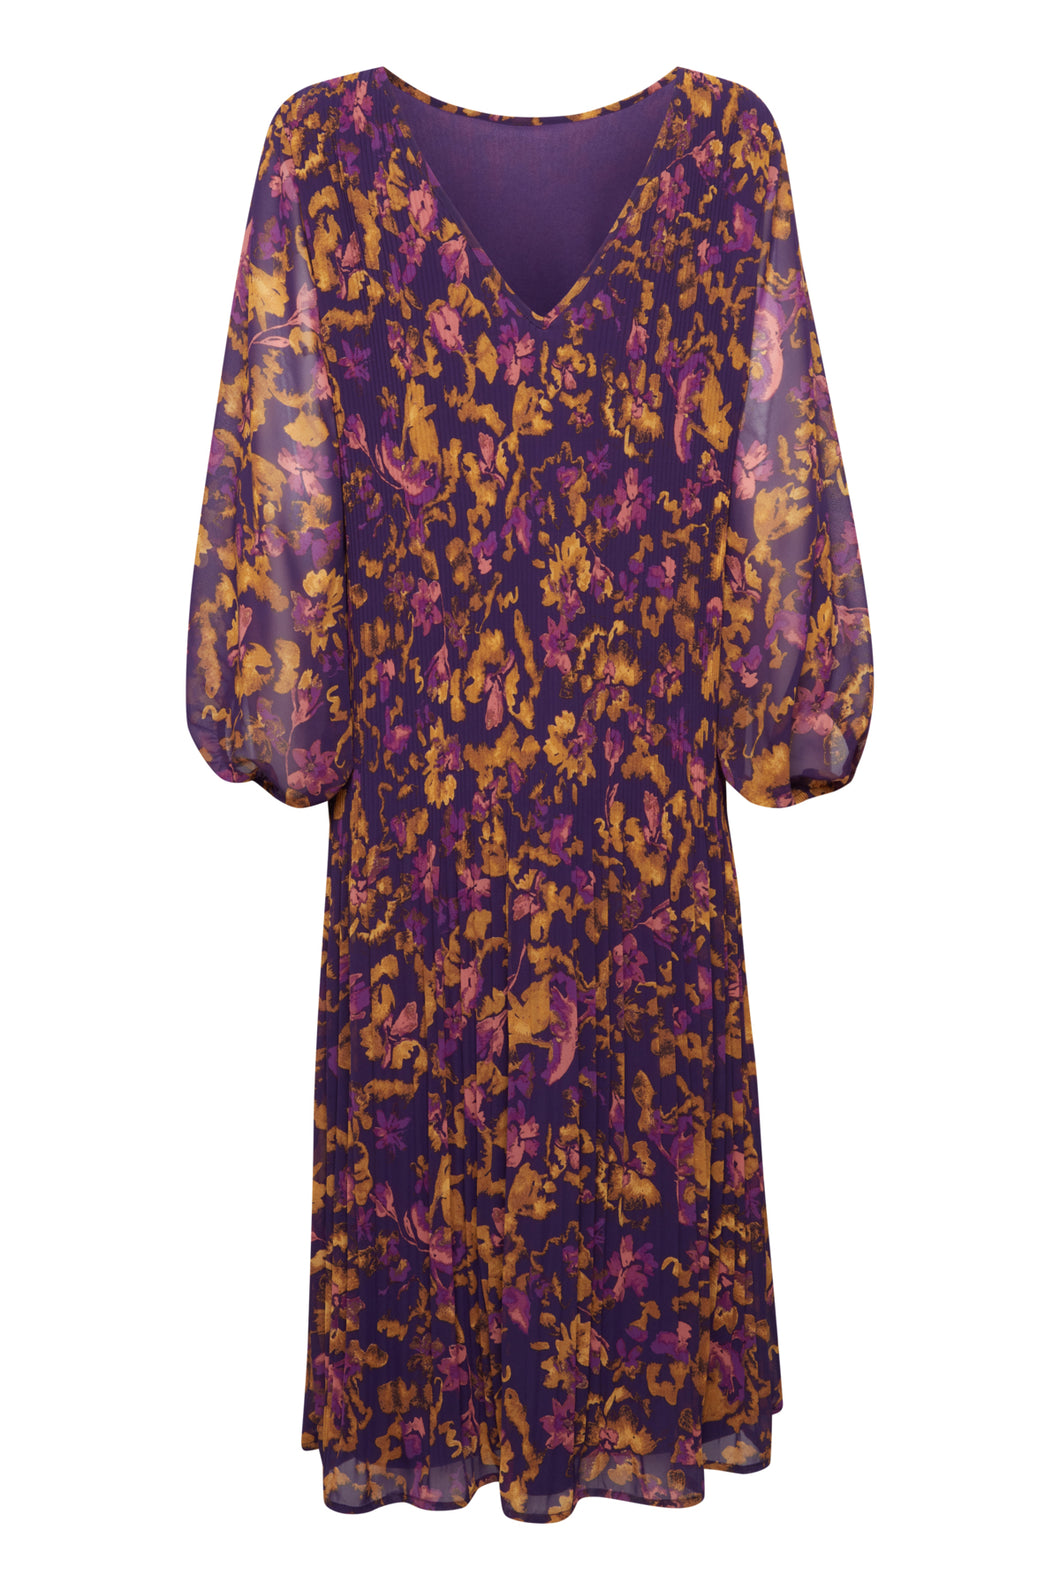 ICHI IHIIlly Dress Purple Multi Flower